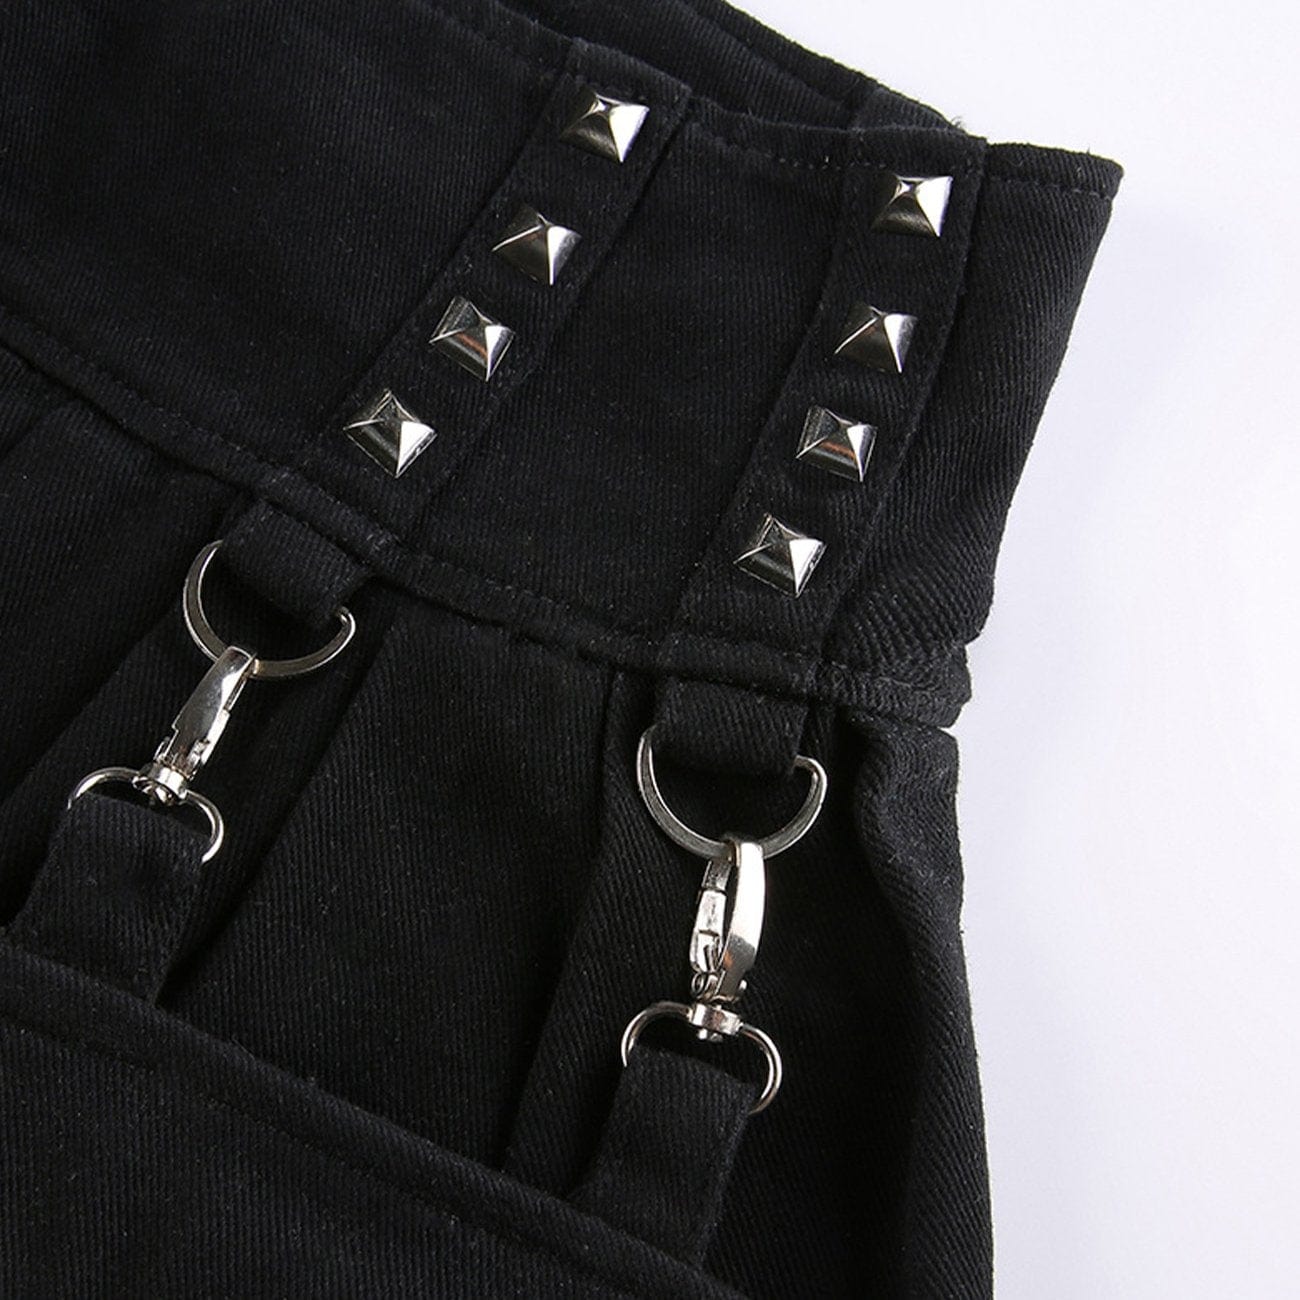 WLS Dark Irregular Detachable Rivets Pants